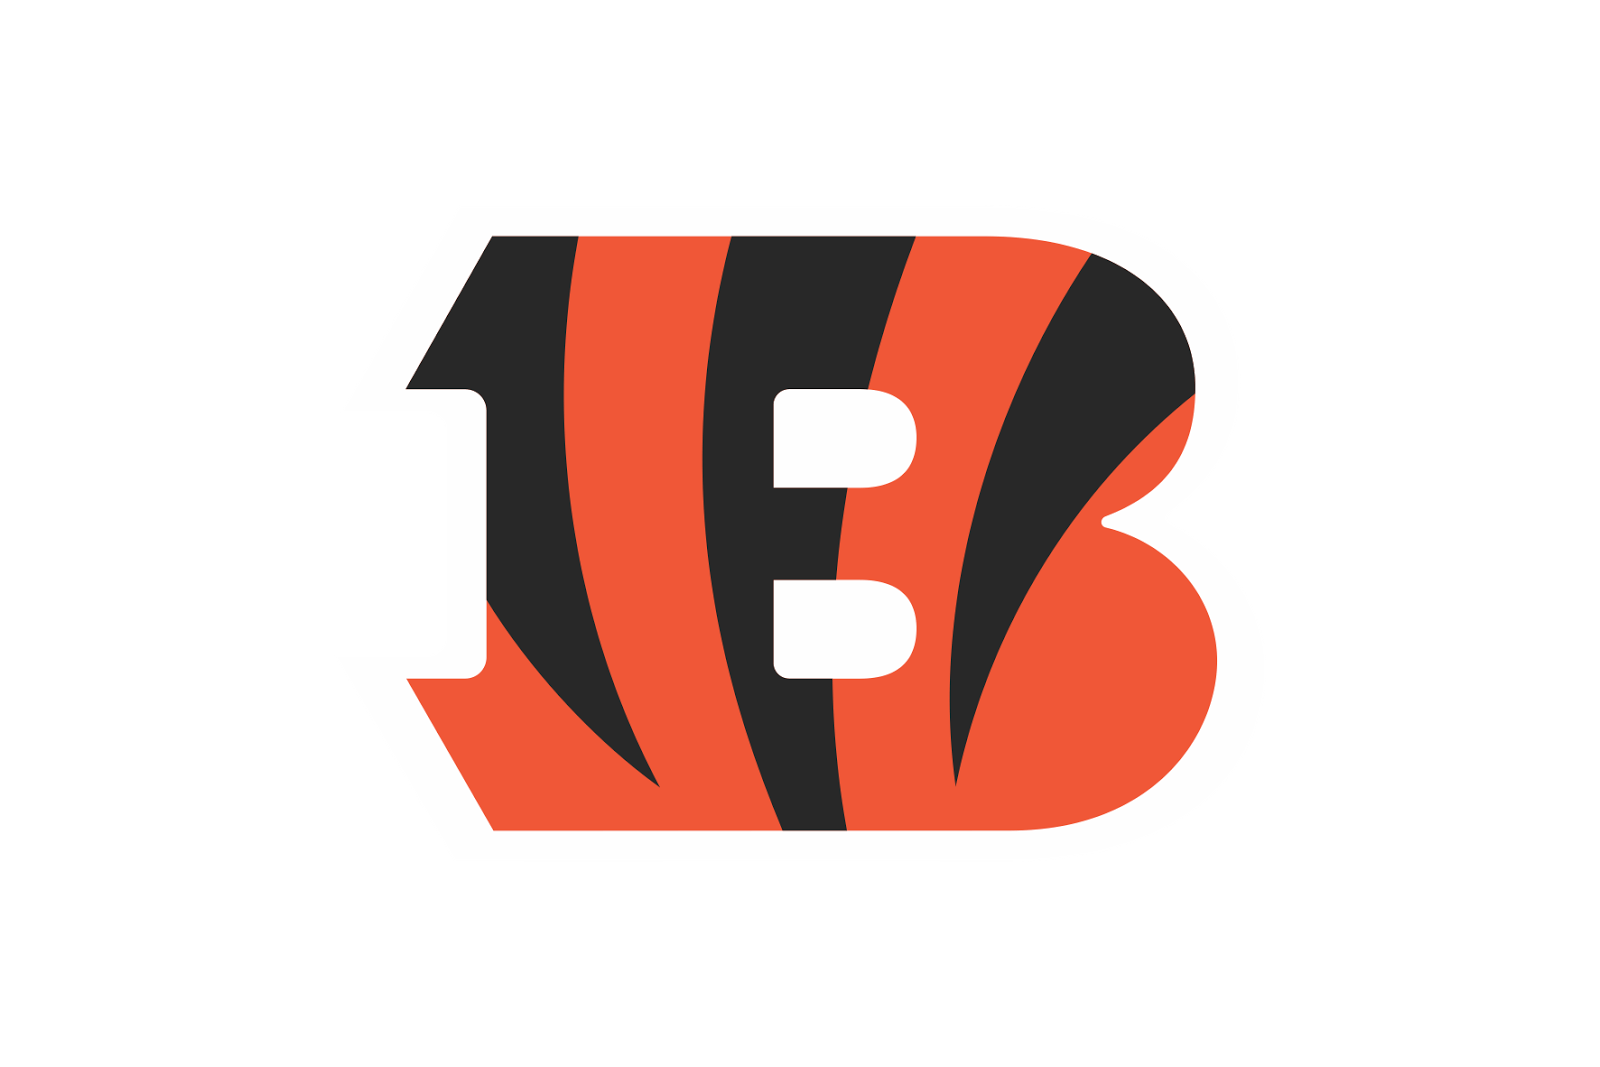 Cincinnati Download Bengals Logo High-quality Png